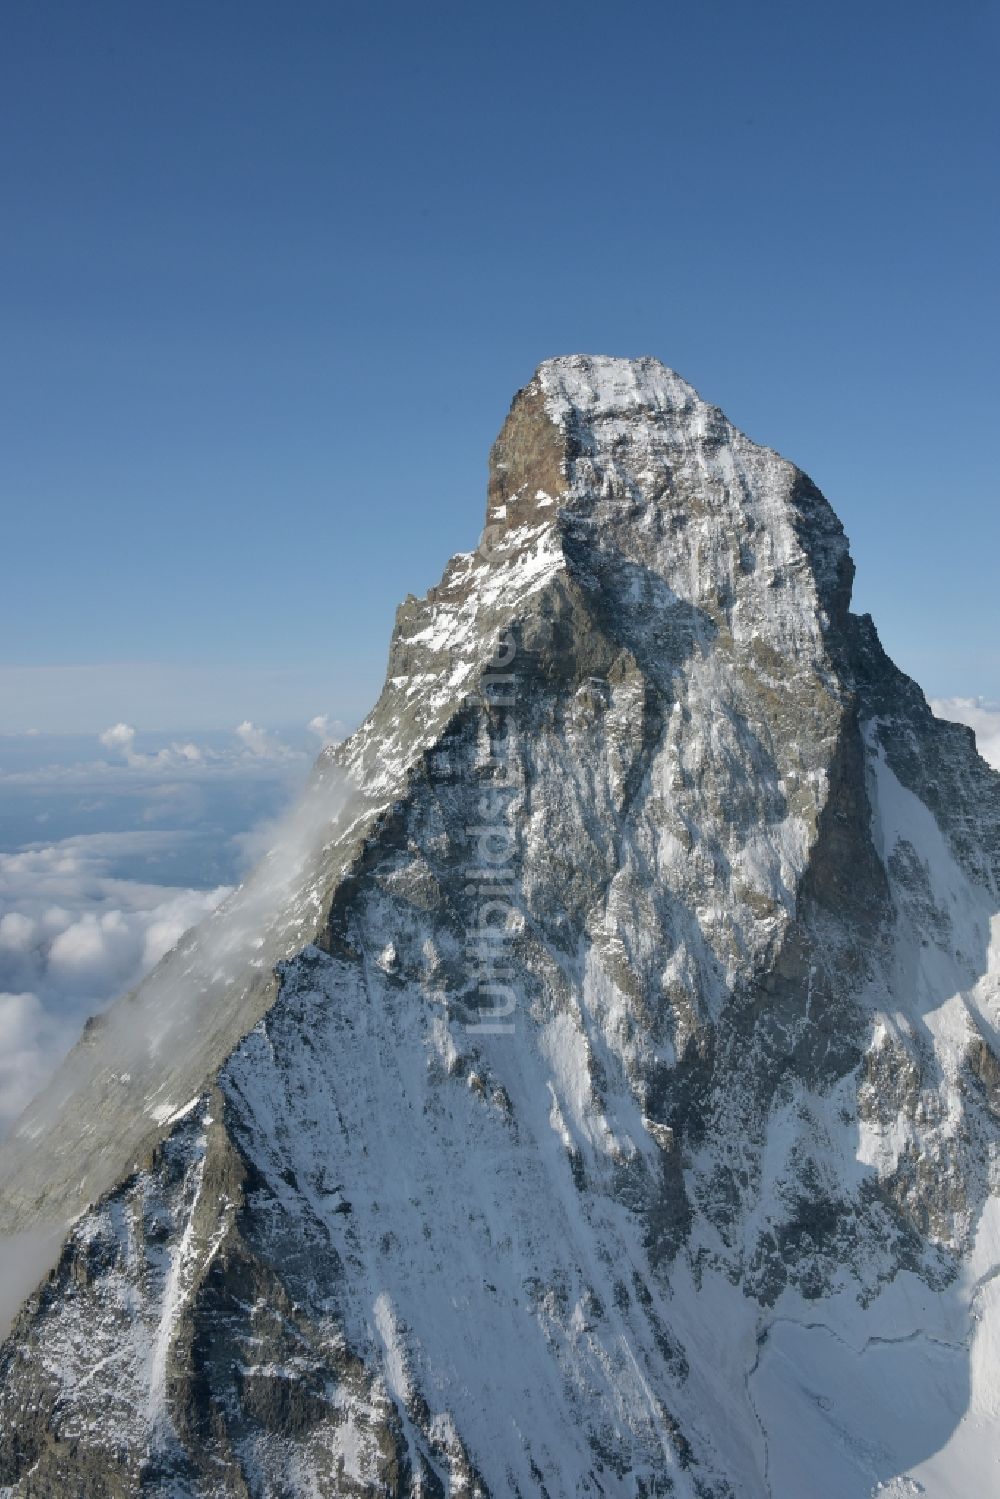 Zermatt aus der Vogelperspektive: Gipfel des Matterhorn in der Felsen- und Berglandschaft in Zermatt im Kanton Wallis, Schweiz